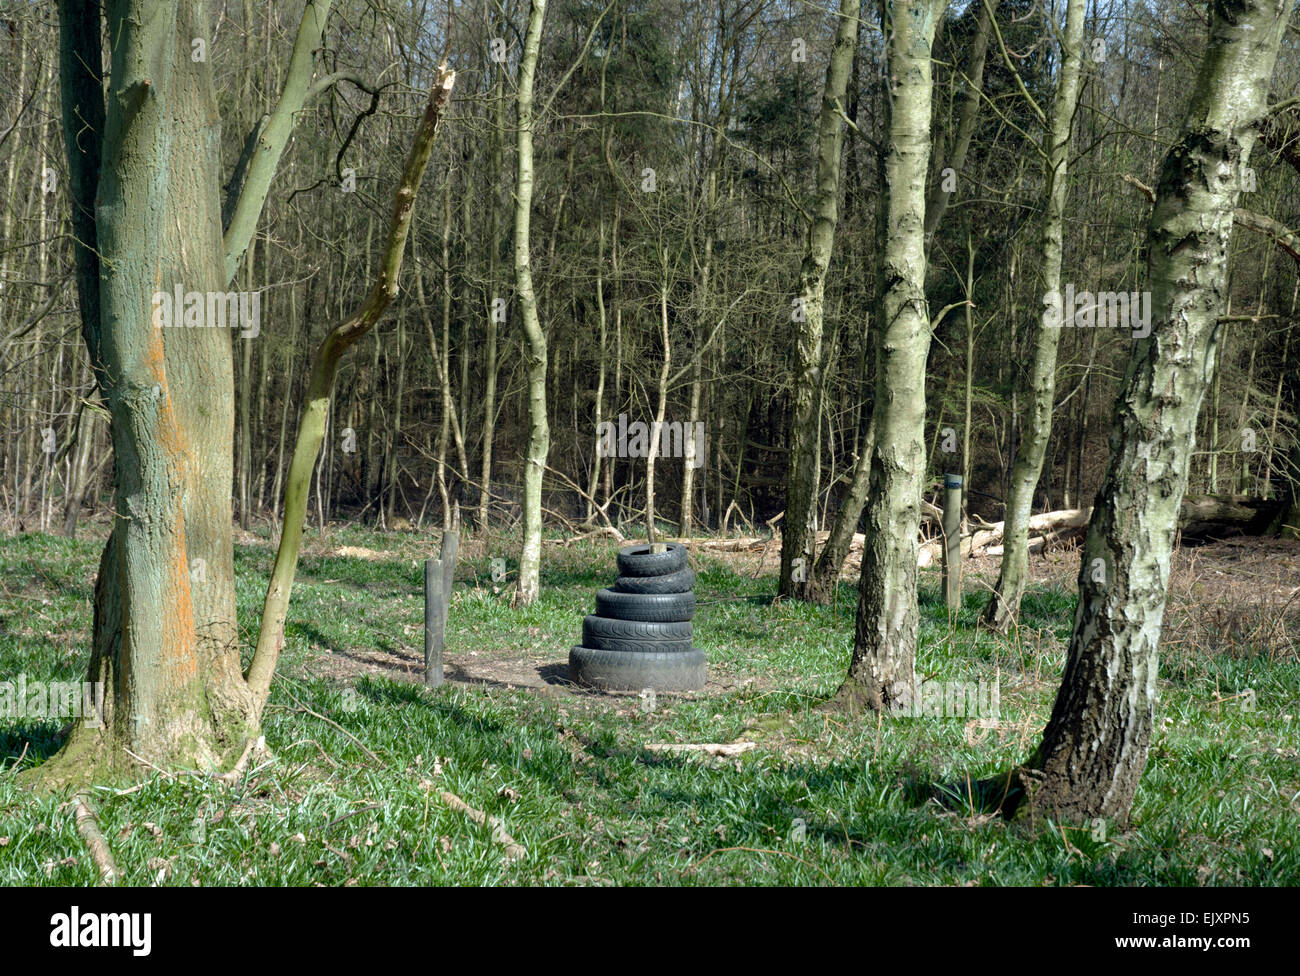 Une sculpture de pneu dans un bois Banque D'Images